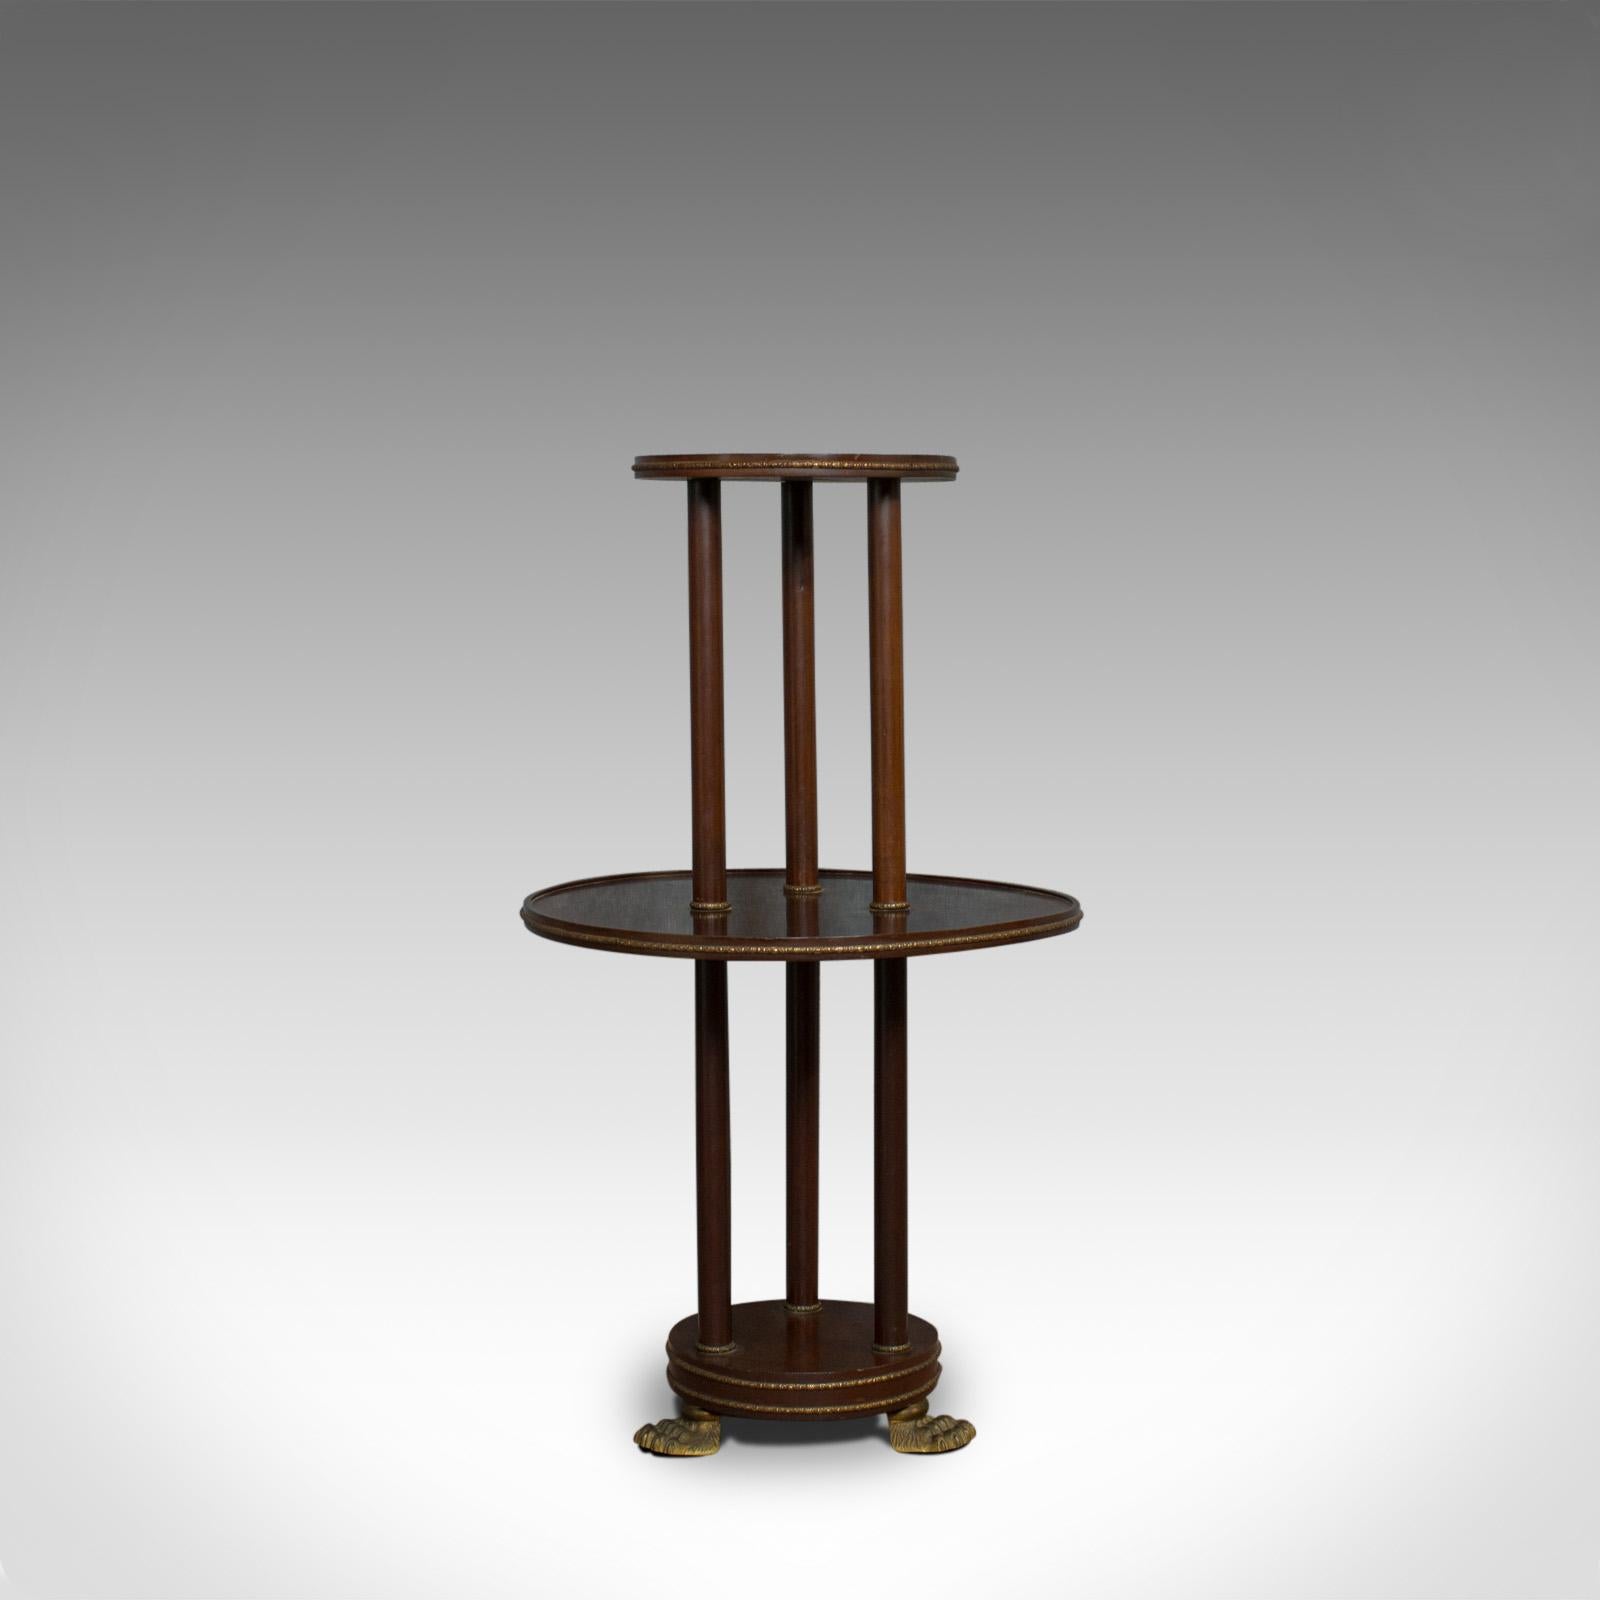 C'est un ancien serveur muet. Table à étages anglaise, victorienne, en acajou, de style Empire, datant de la fin du XIXe siècle, vers 1880.

L'acajou riche en teintes roussâtres présente une patine vieillie souhaitable
Bandes détaillées en métal